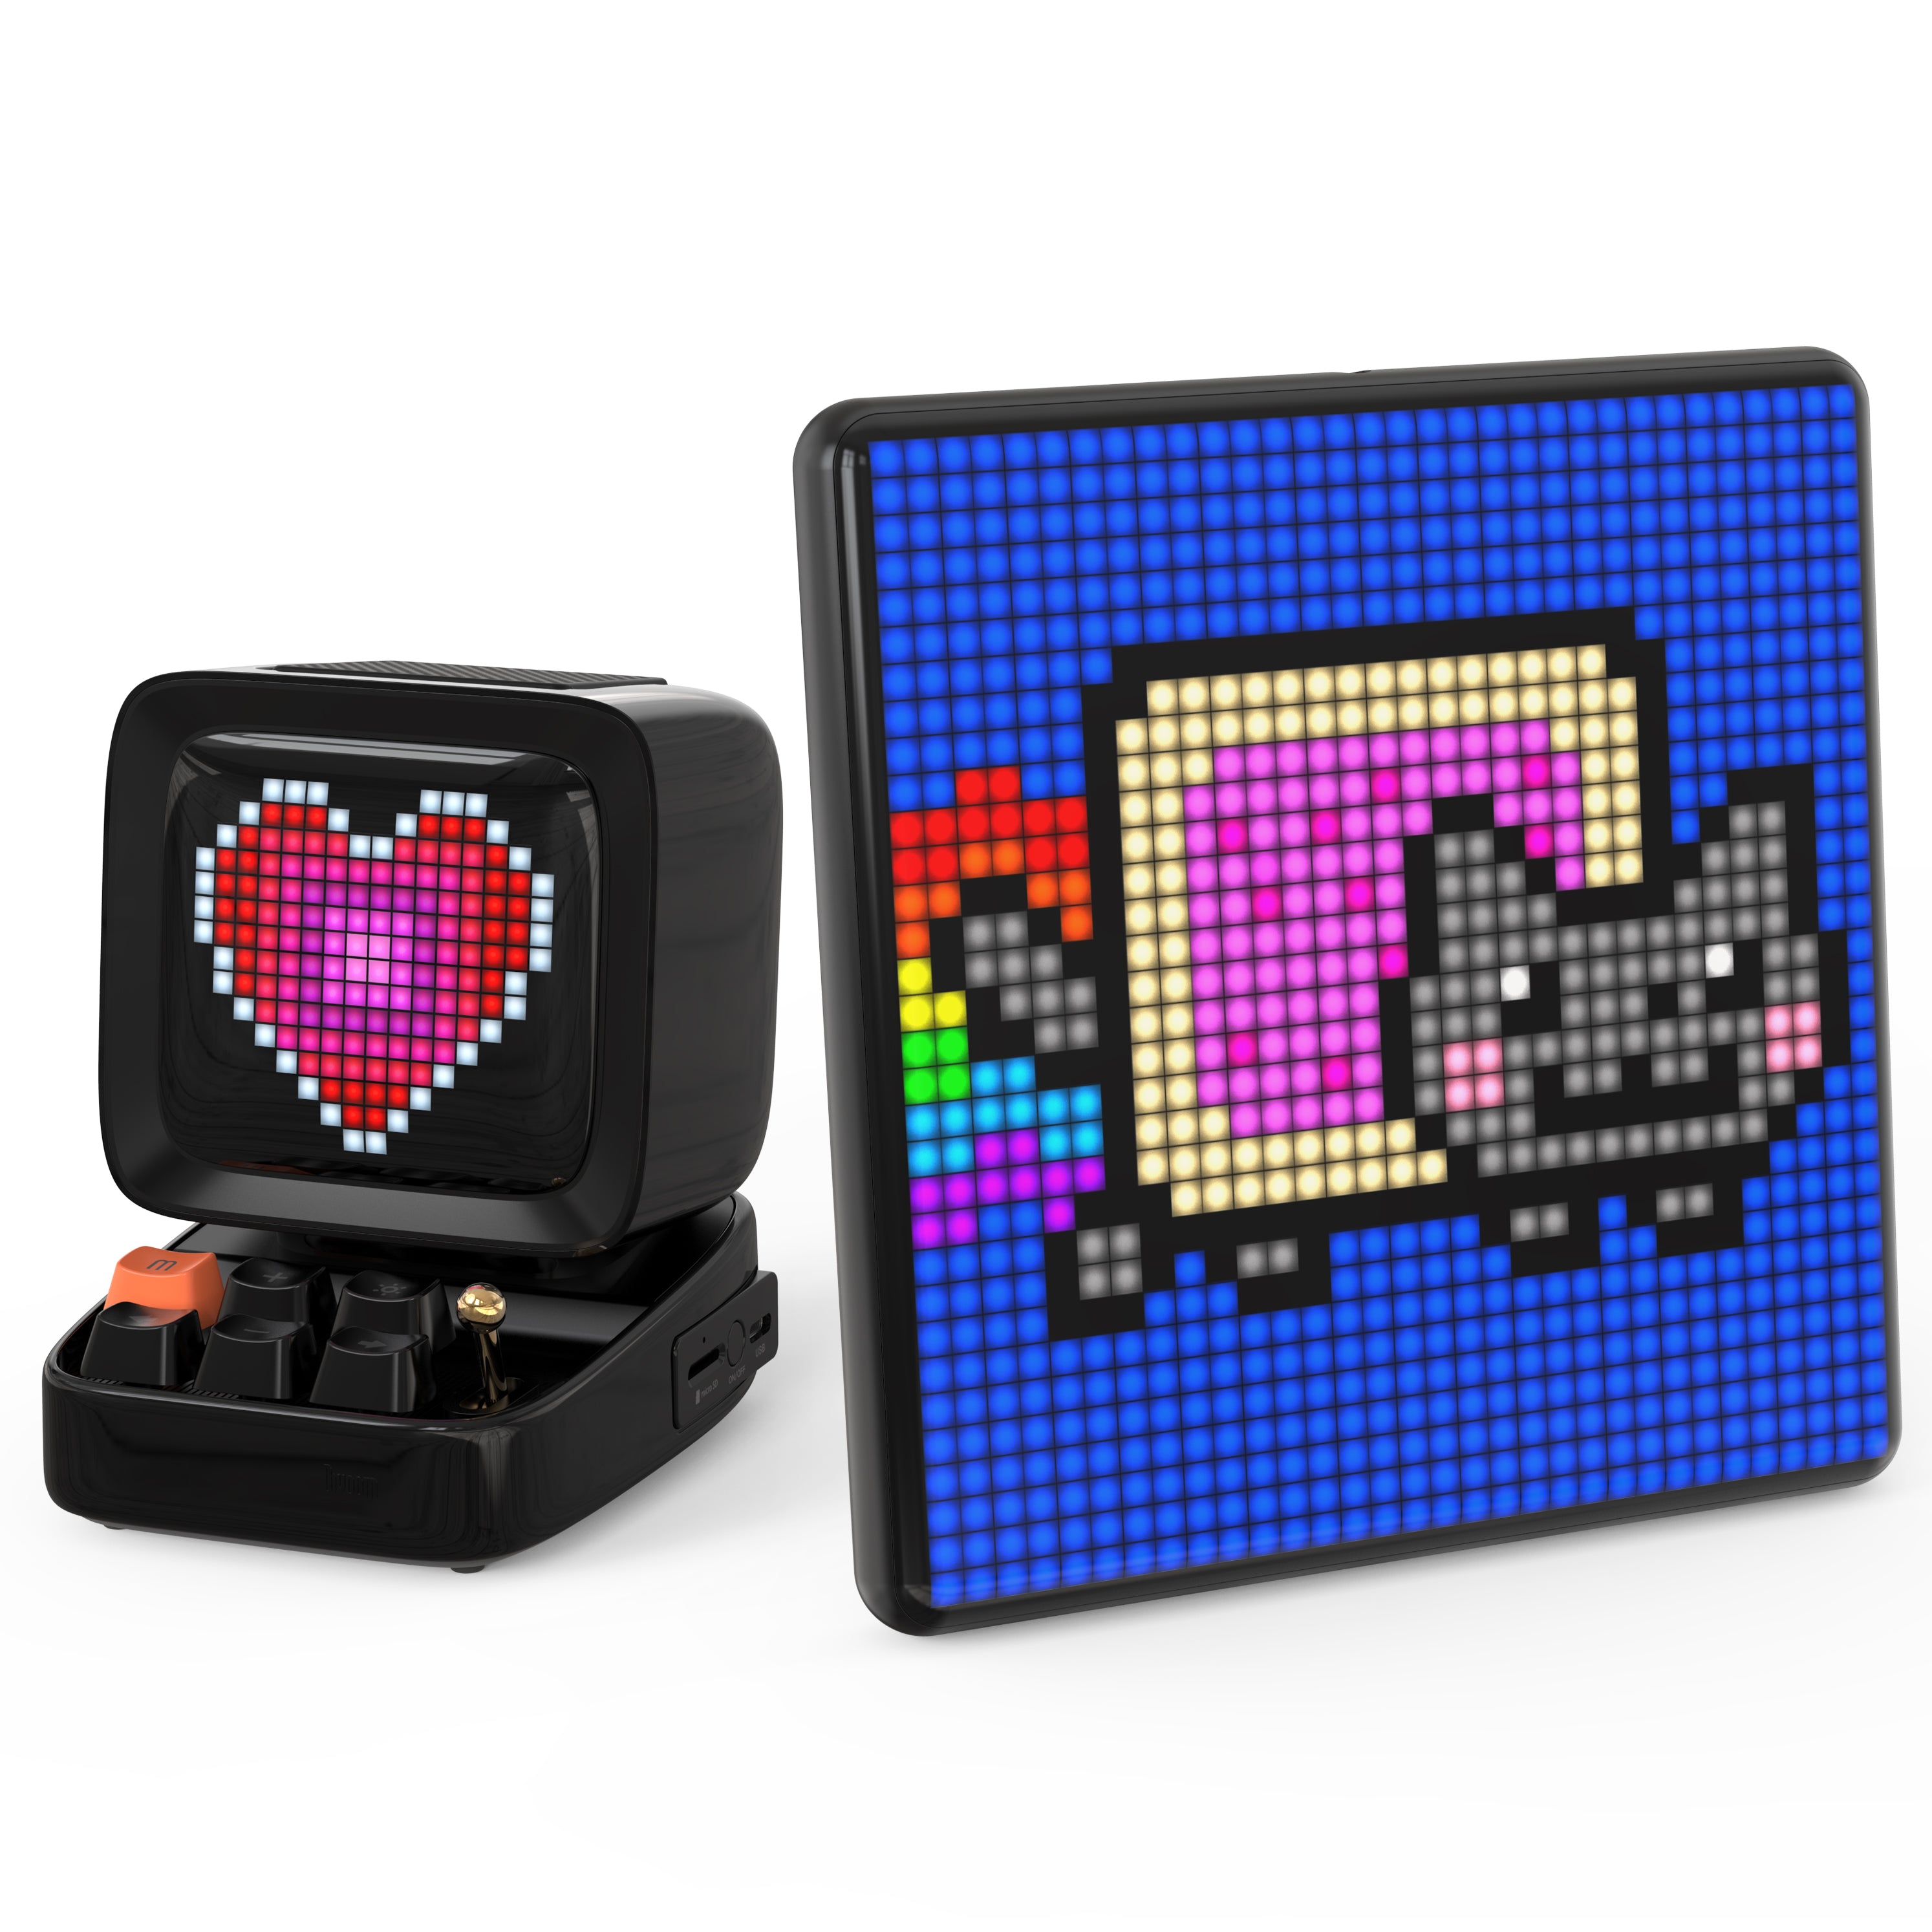 Divoom Pixoo-Max Pixel Display et Divoom Ditoo Retro Pixel Art Game Haut-parleur Bluetooth avec écran avant contrôlé par application LED 16 x 16